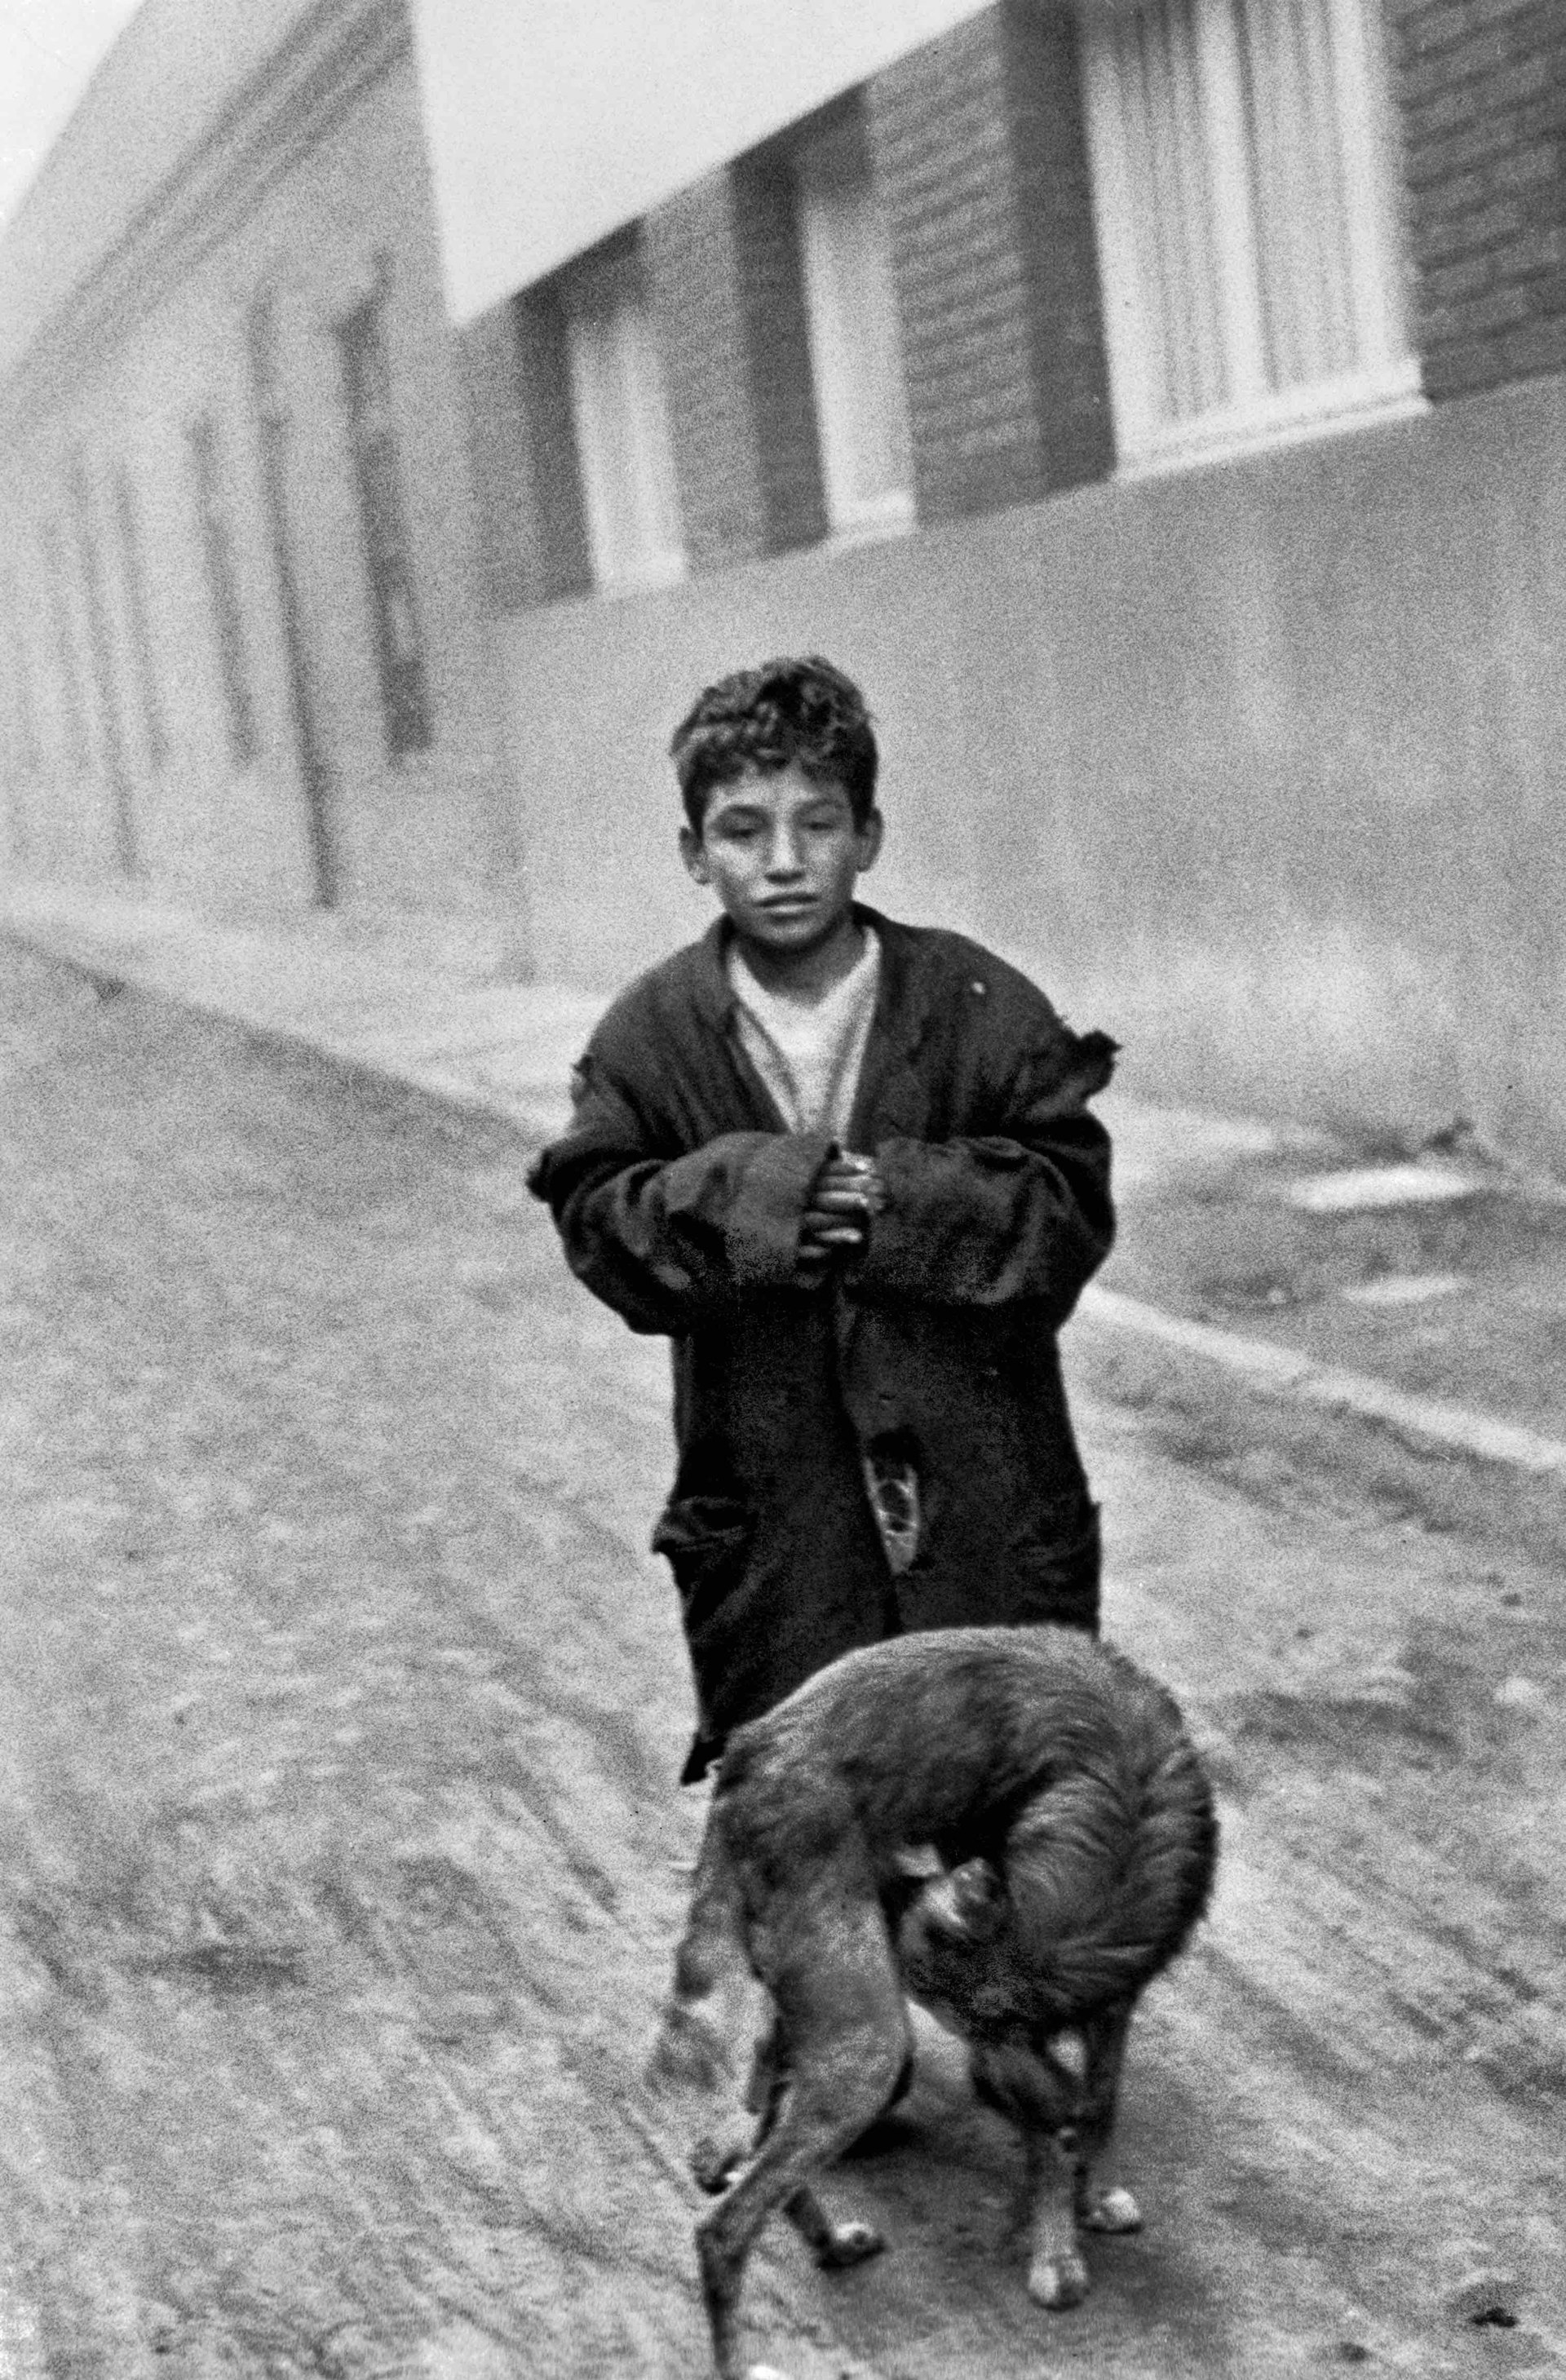 CHILE. Santiago, 1955. Photo by Sergio Larrain. 